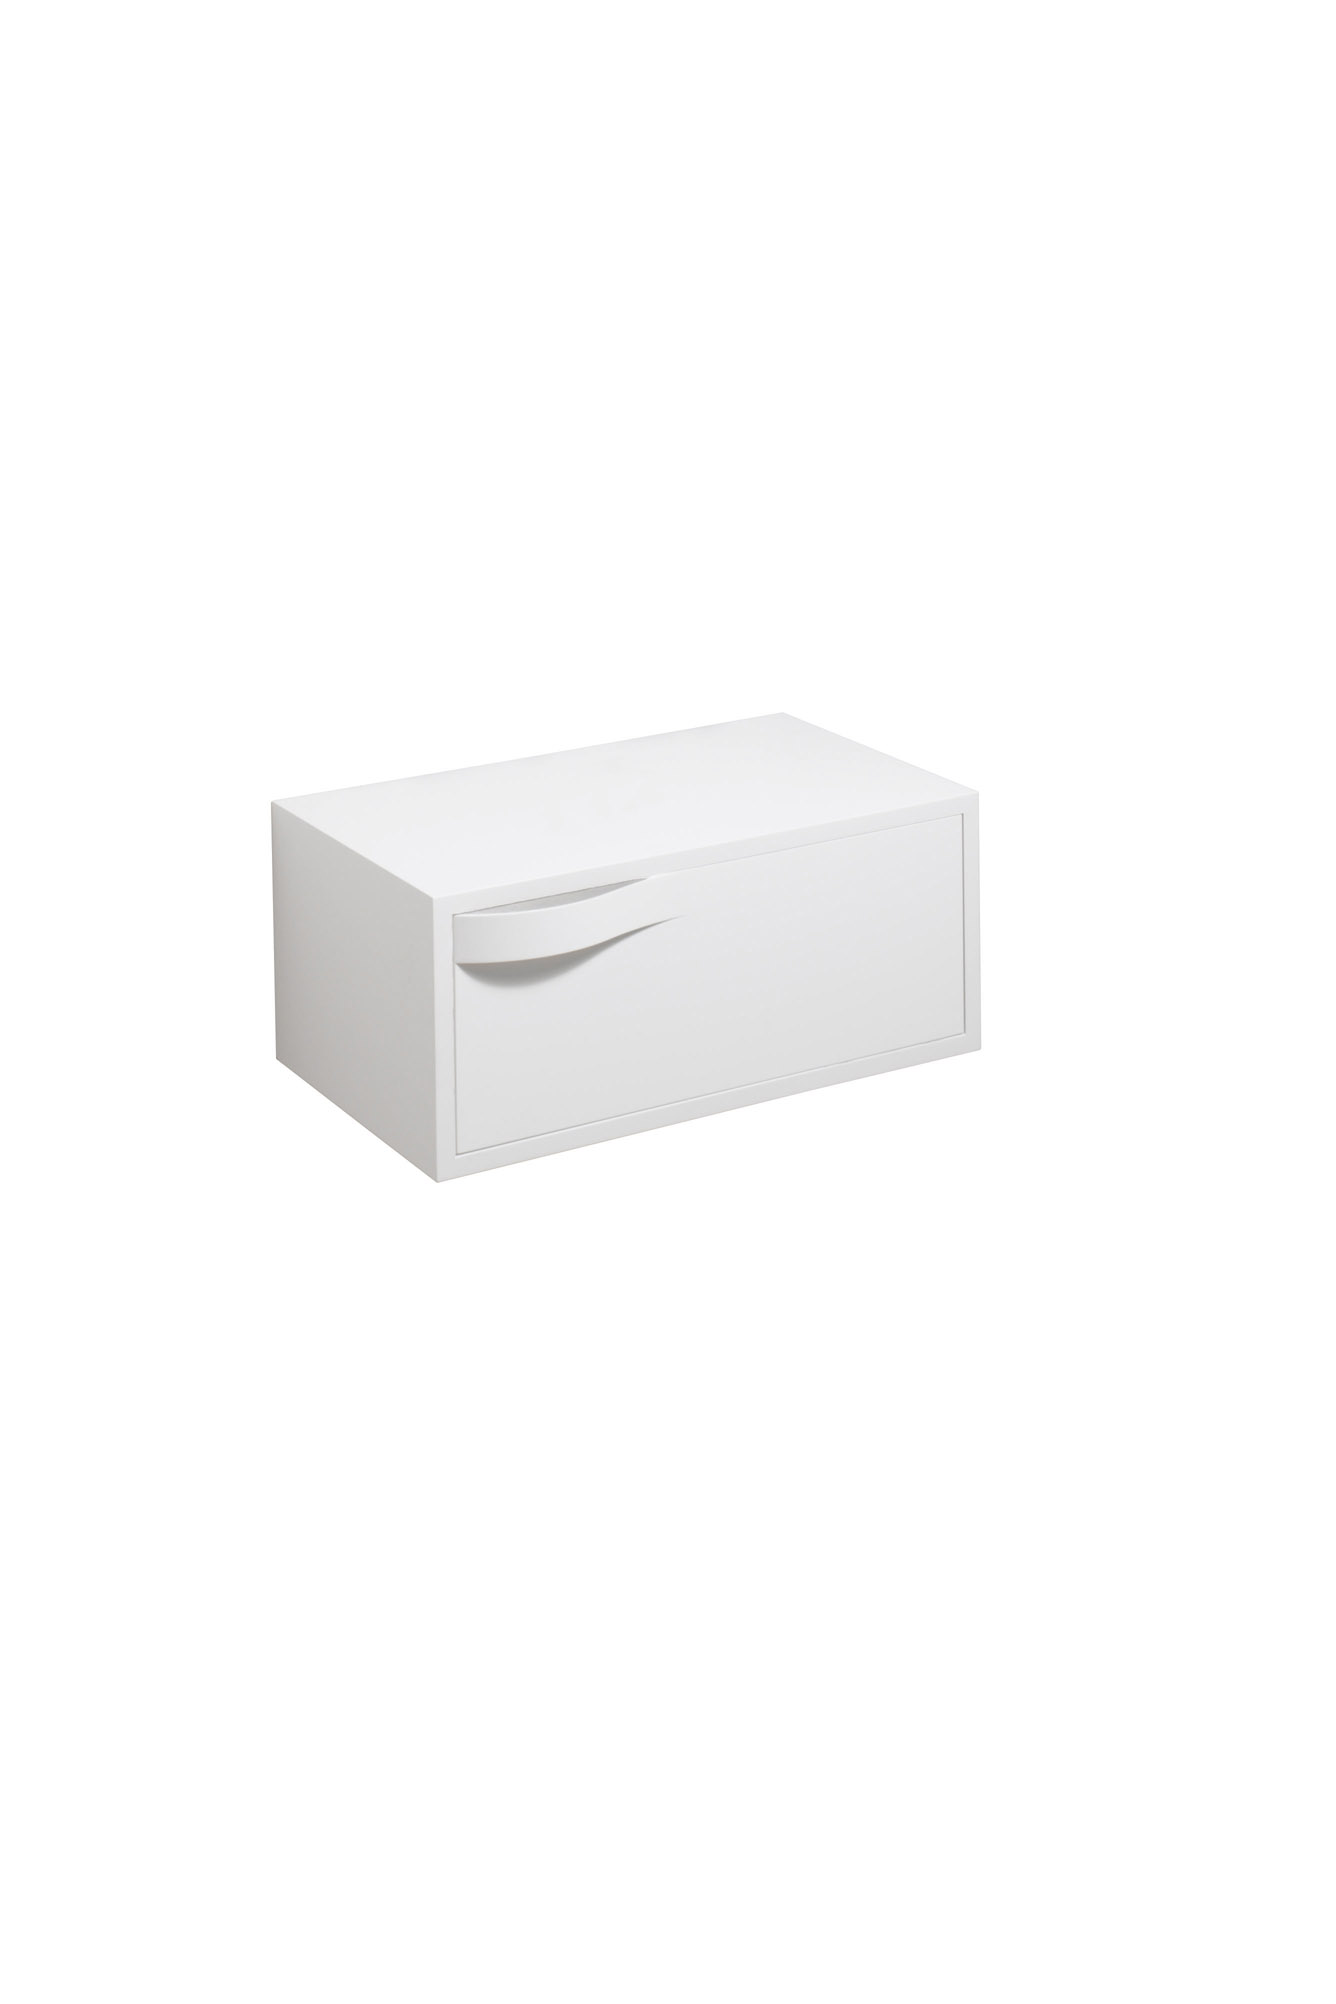 koupelnový nábytek KERAMAG Flow boční skříňka matná bílá